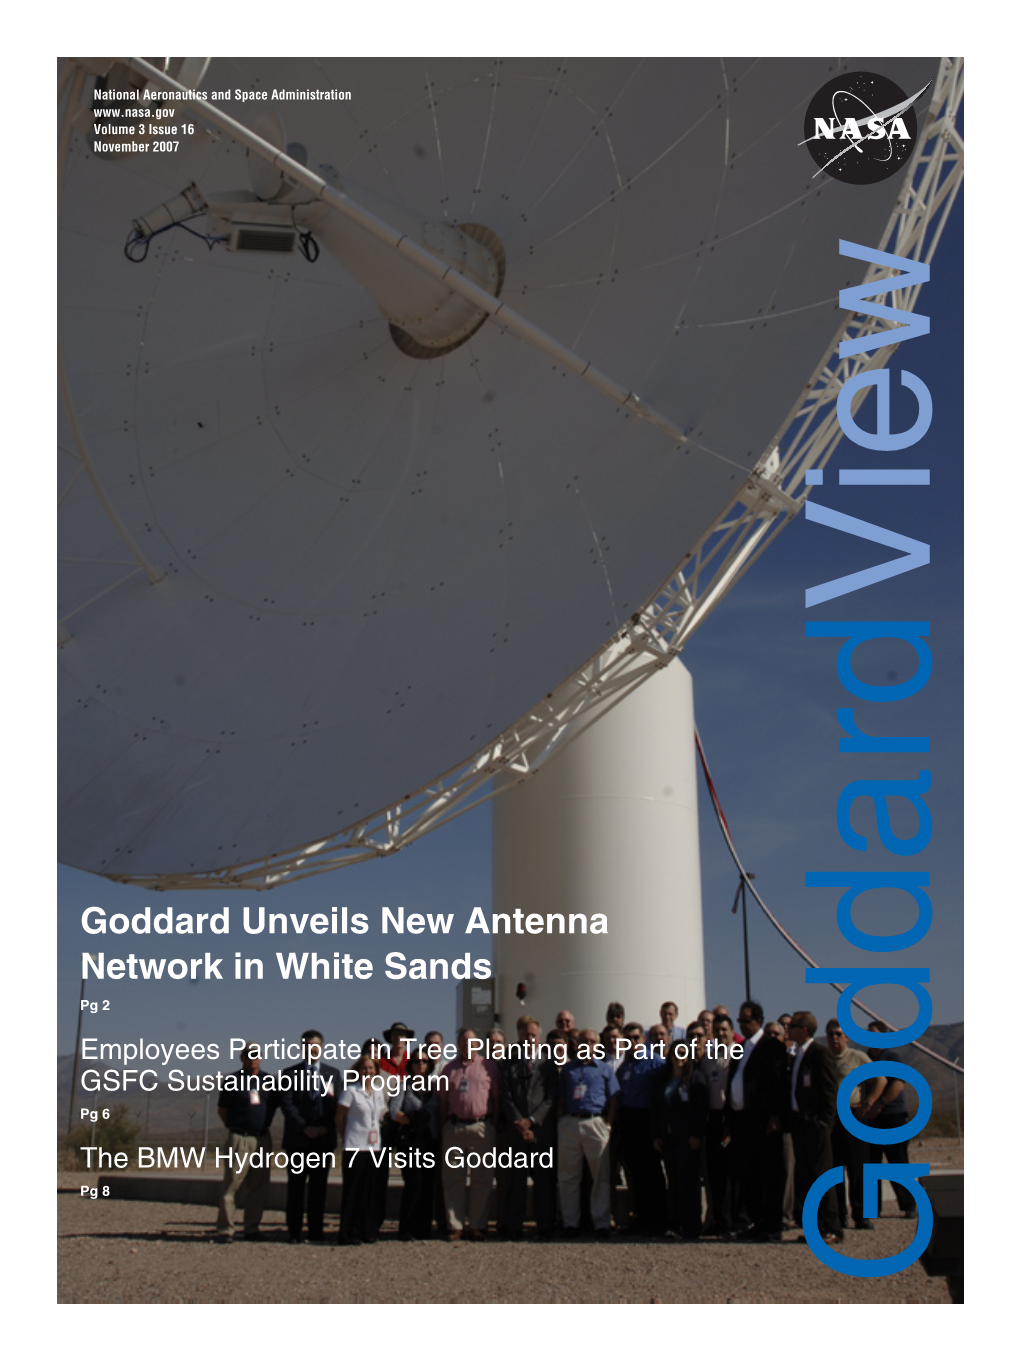 Goddard Unveils New Antenna Network in White Sands